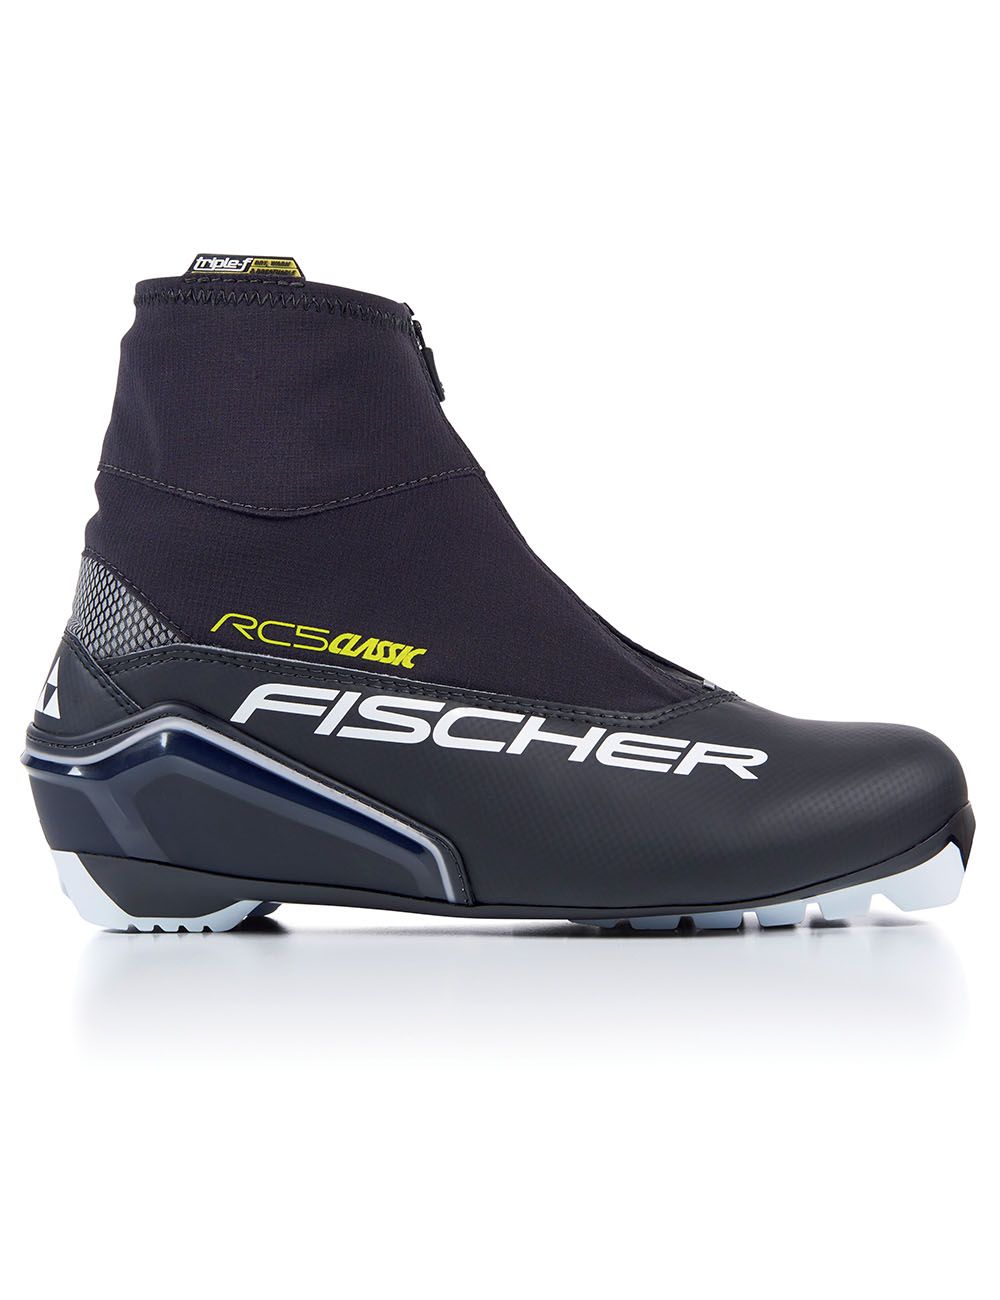 Ботинки лыжные FISCHER RC5 Classic 